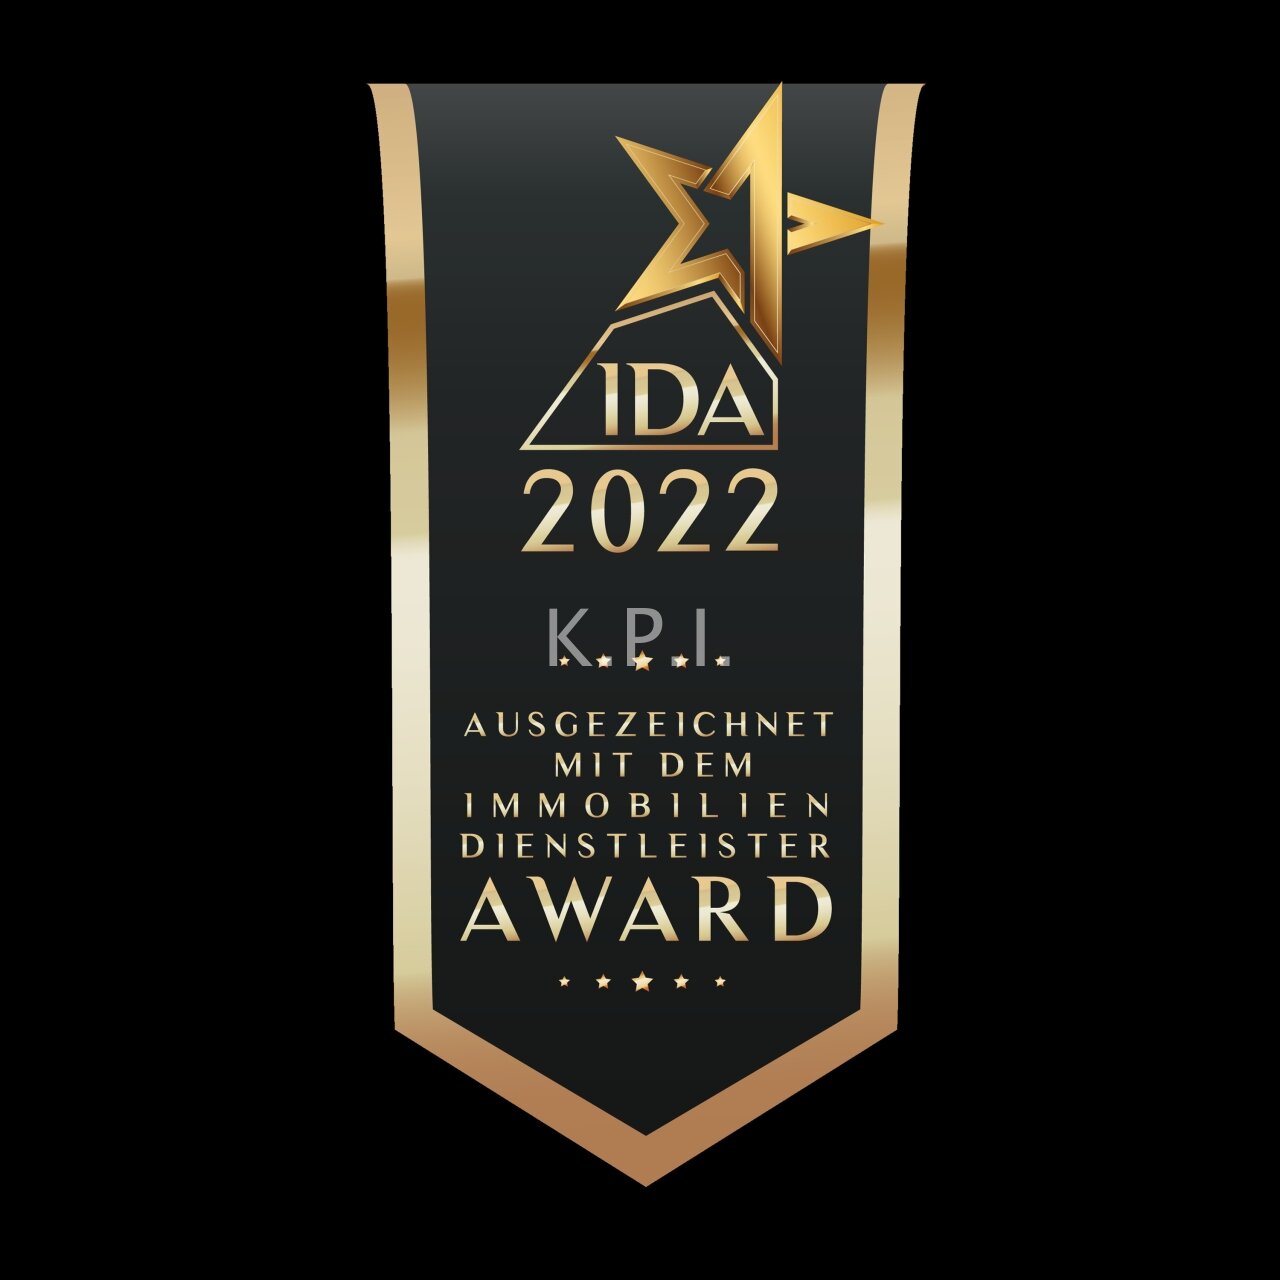 KPI 2022 AWARD